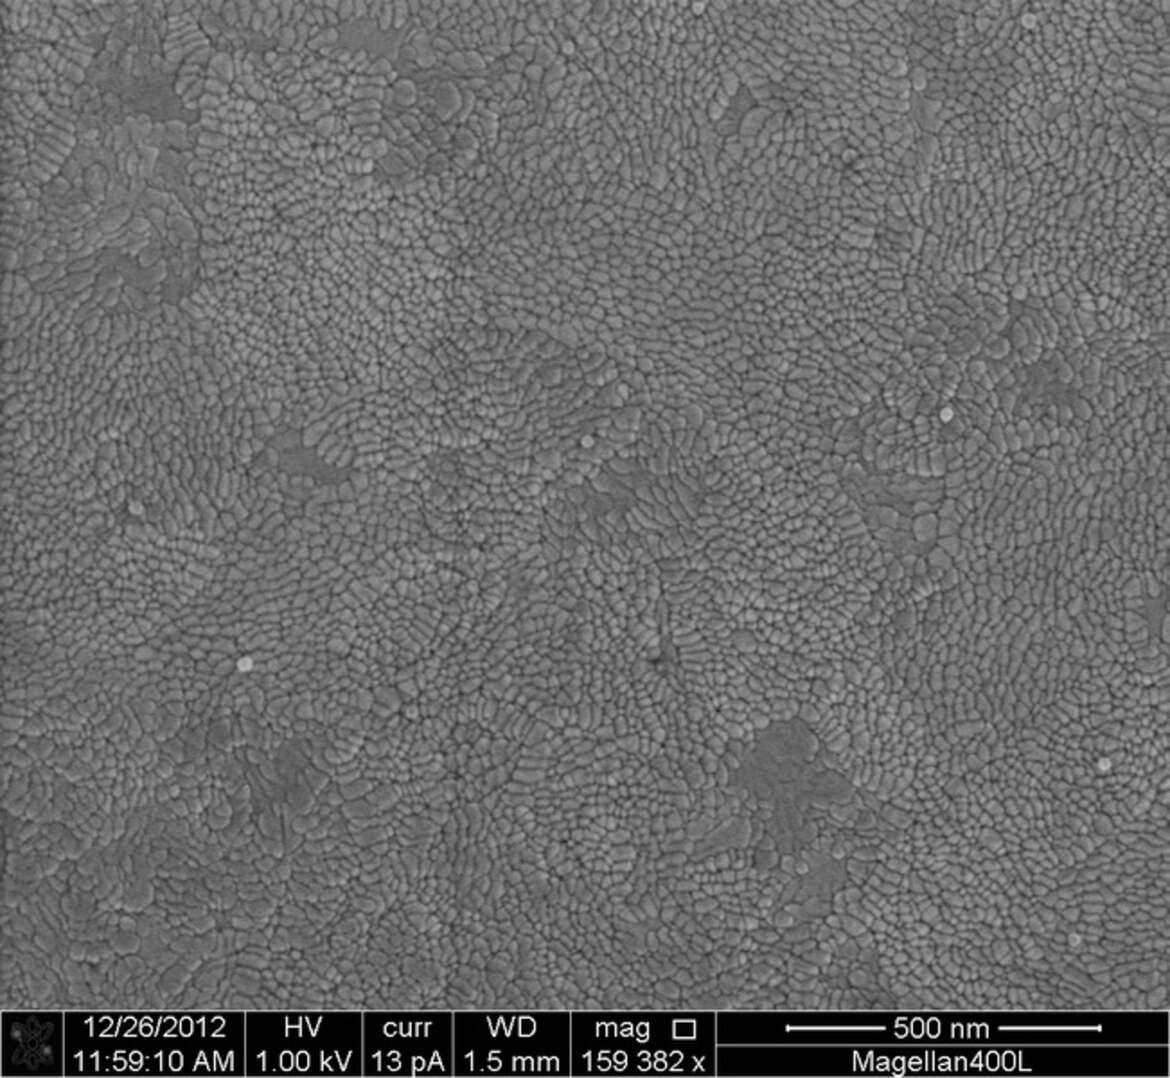 Bildquelle: Wikipedia - Nahaufnahme einer Beschichtung von Indiumzinnoxid auf einer Glasplatte